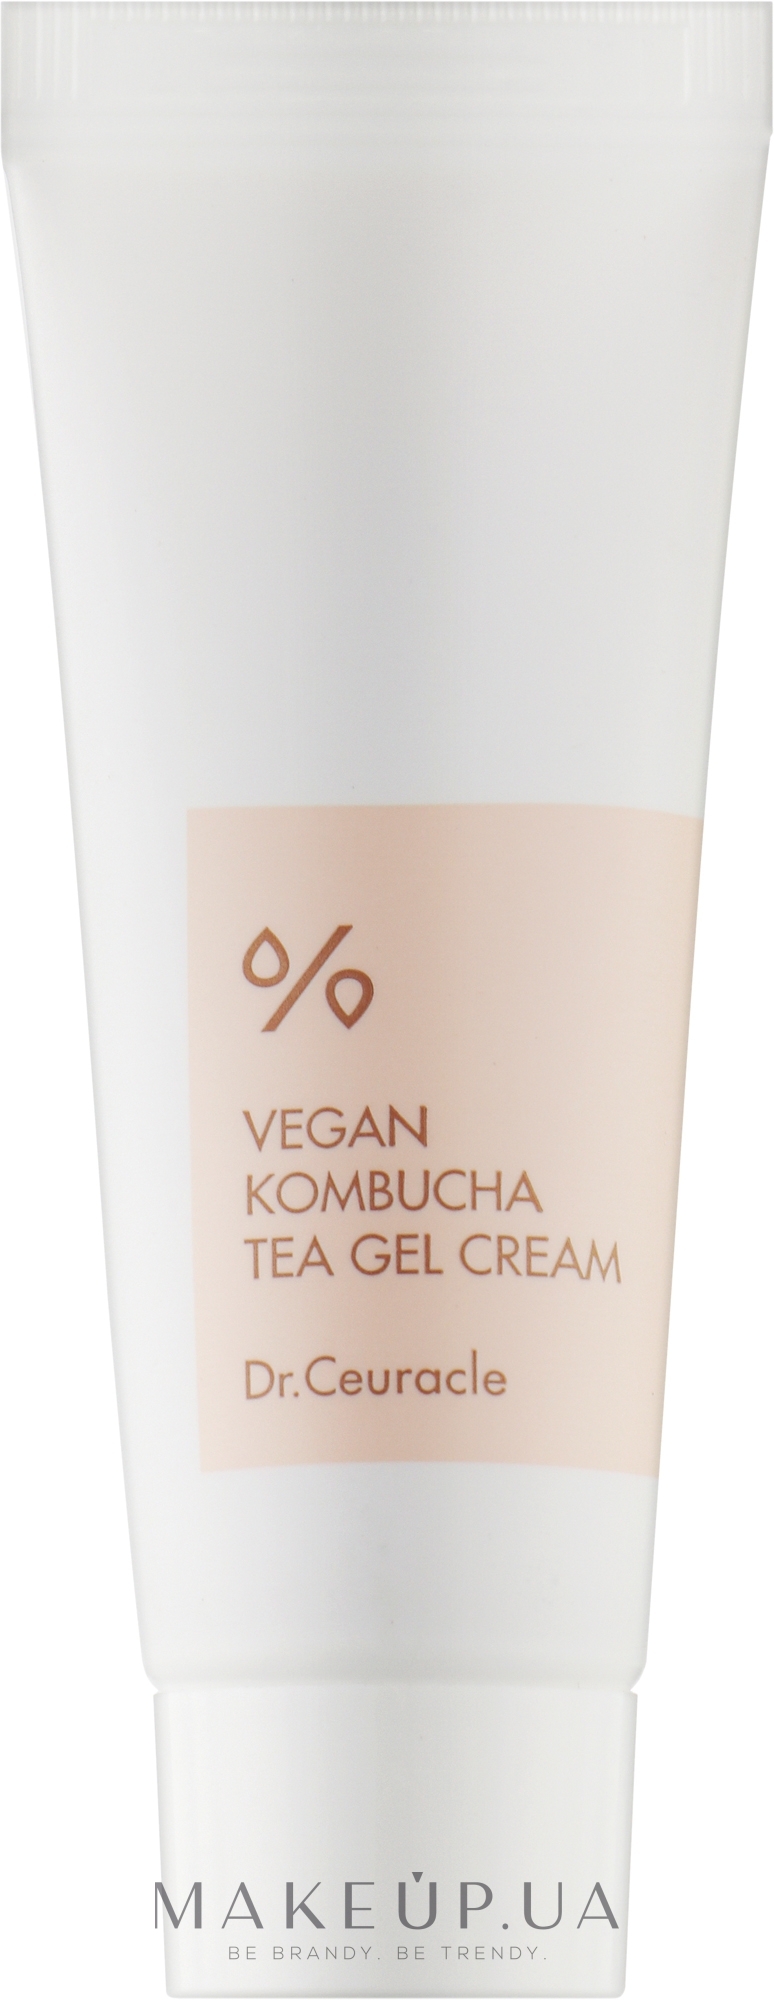 Веганский крем-гель для лица с экстрактом комбучи - Dr.Ceuracle Vegan Kombucha Tea Gel Cream (мини) — фото 15g